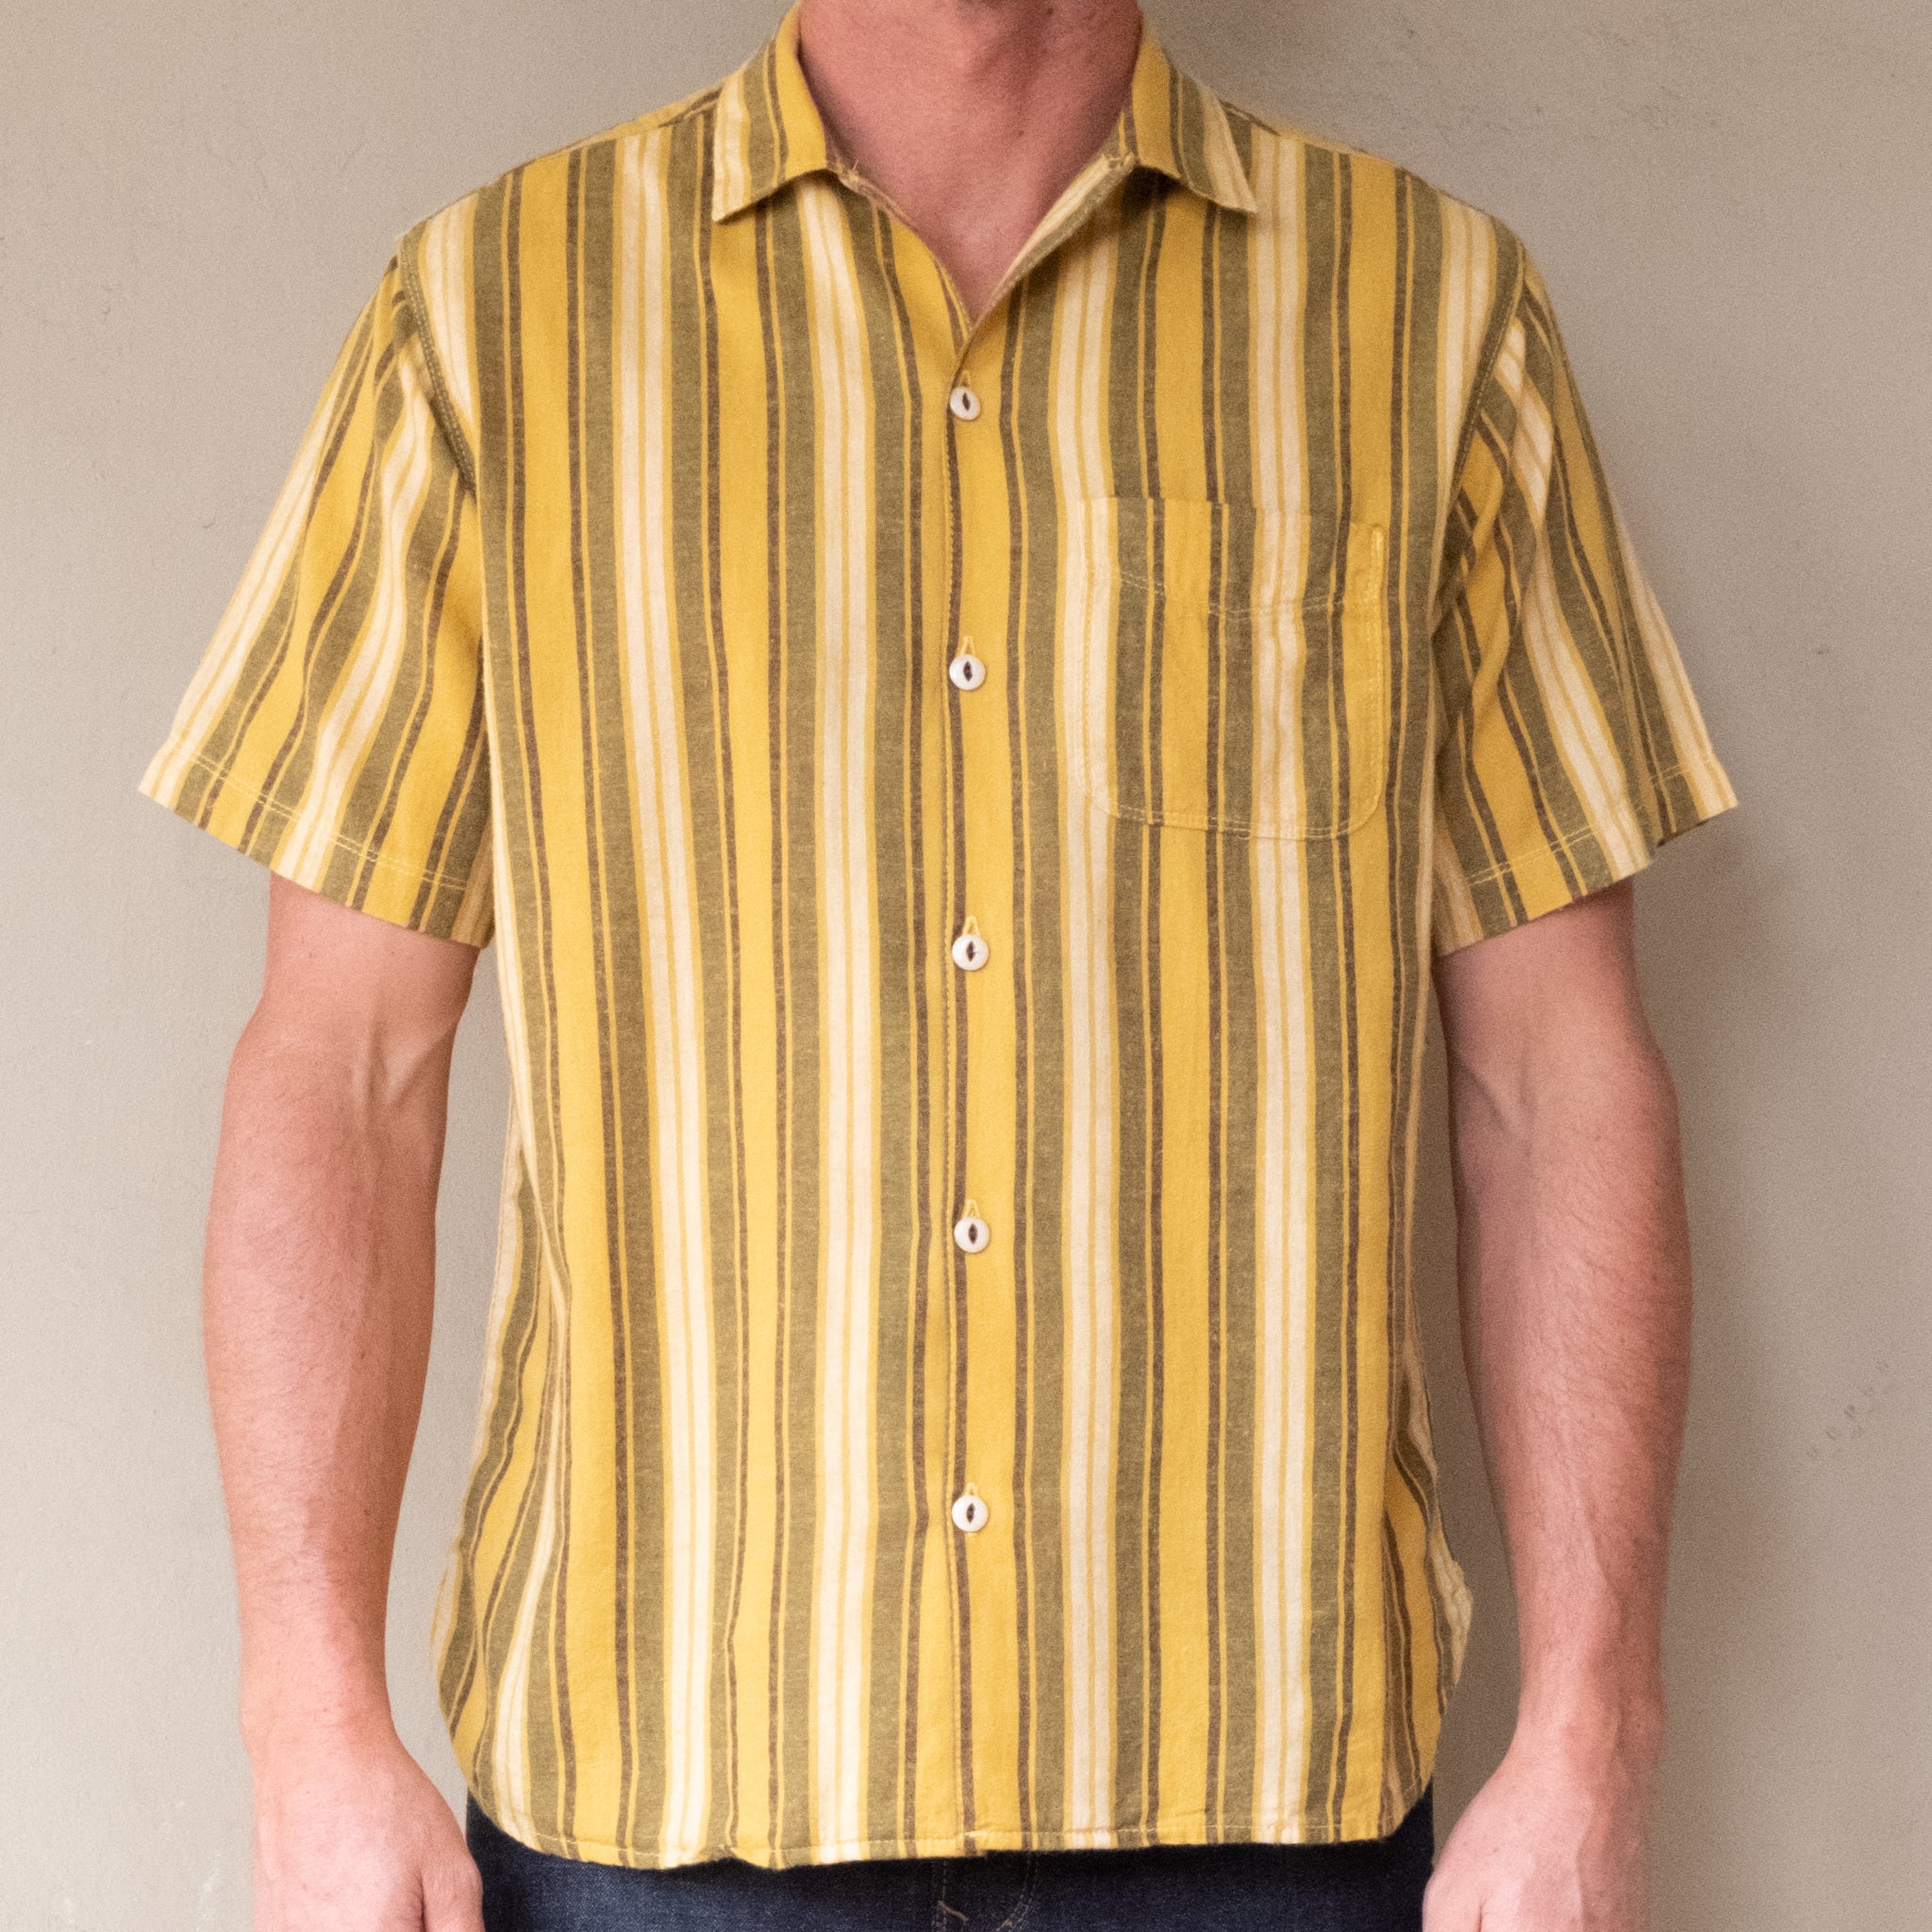 Hutspah Men's Shirt Striped Button Down Vintage Yellow / Gray